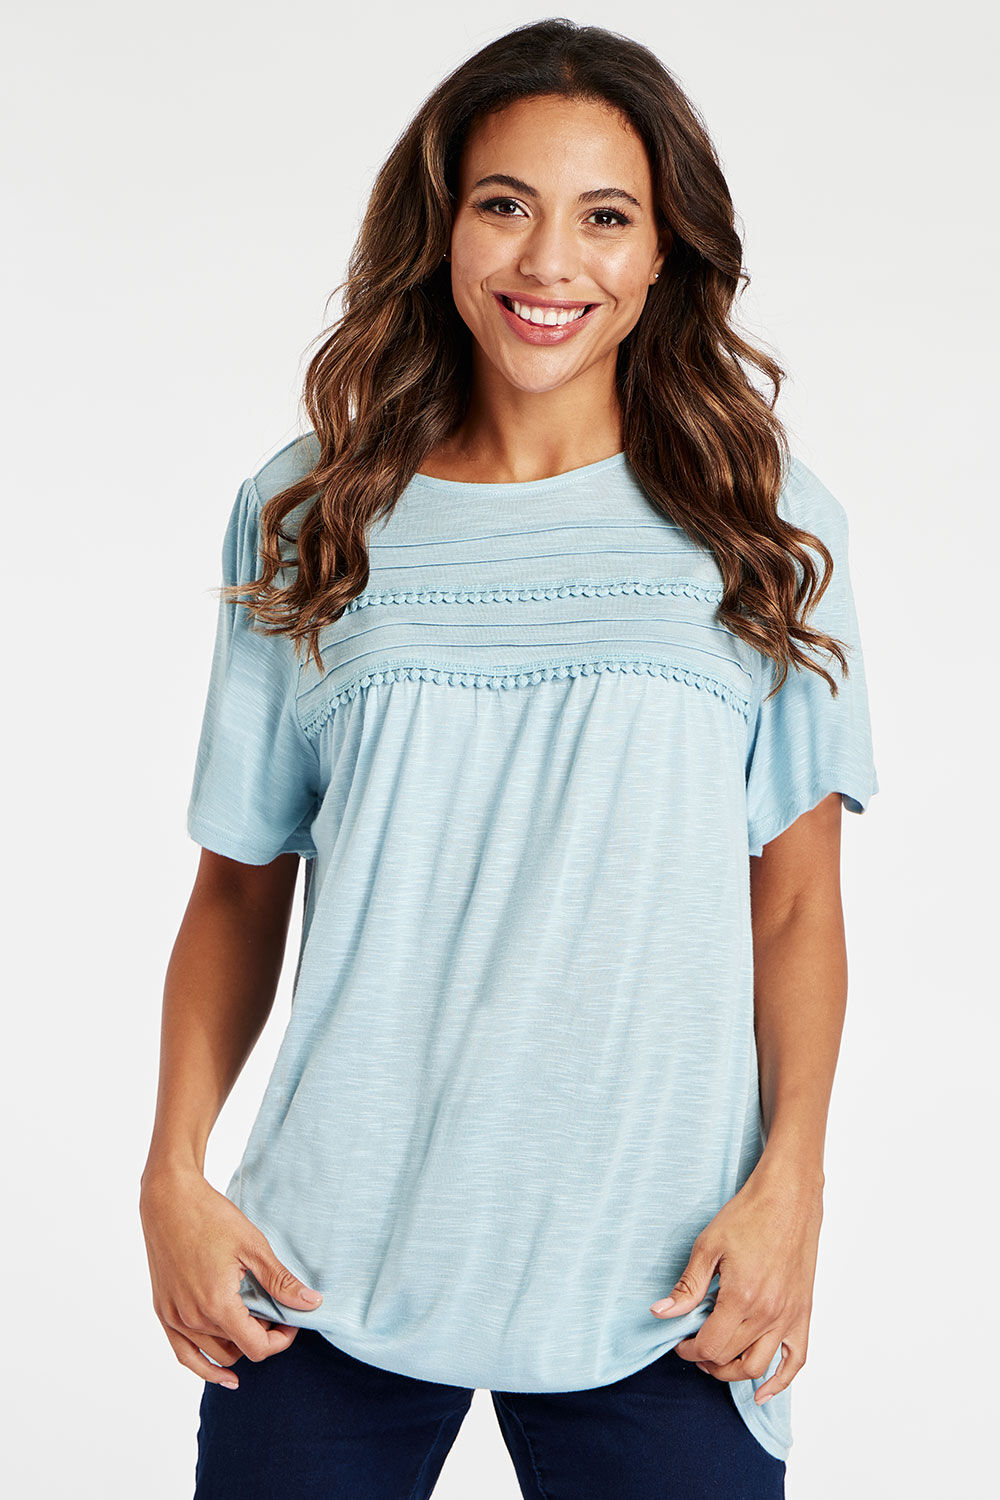 Bonmarche Blue Short Sleeve Lace Trim T-Shirt, Size: 16